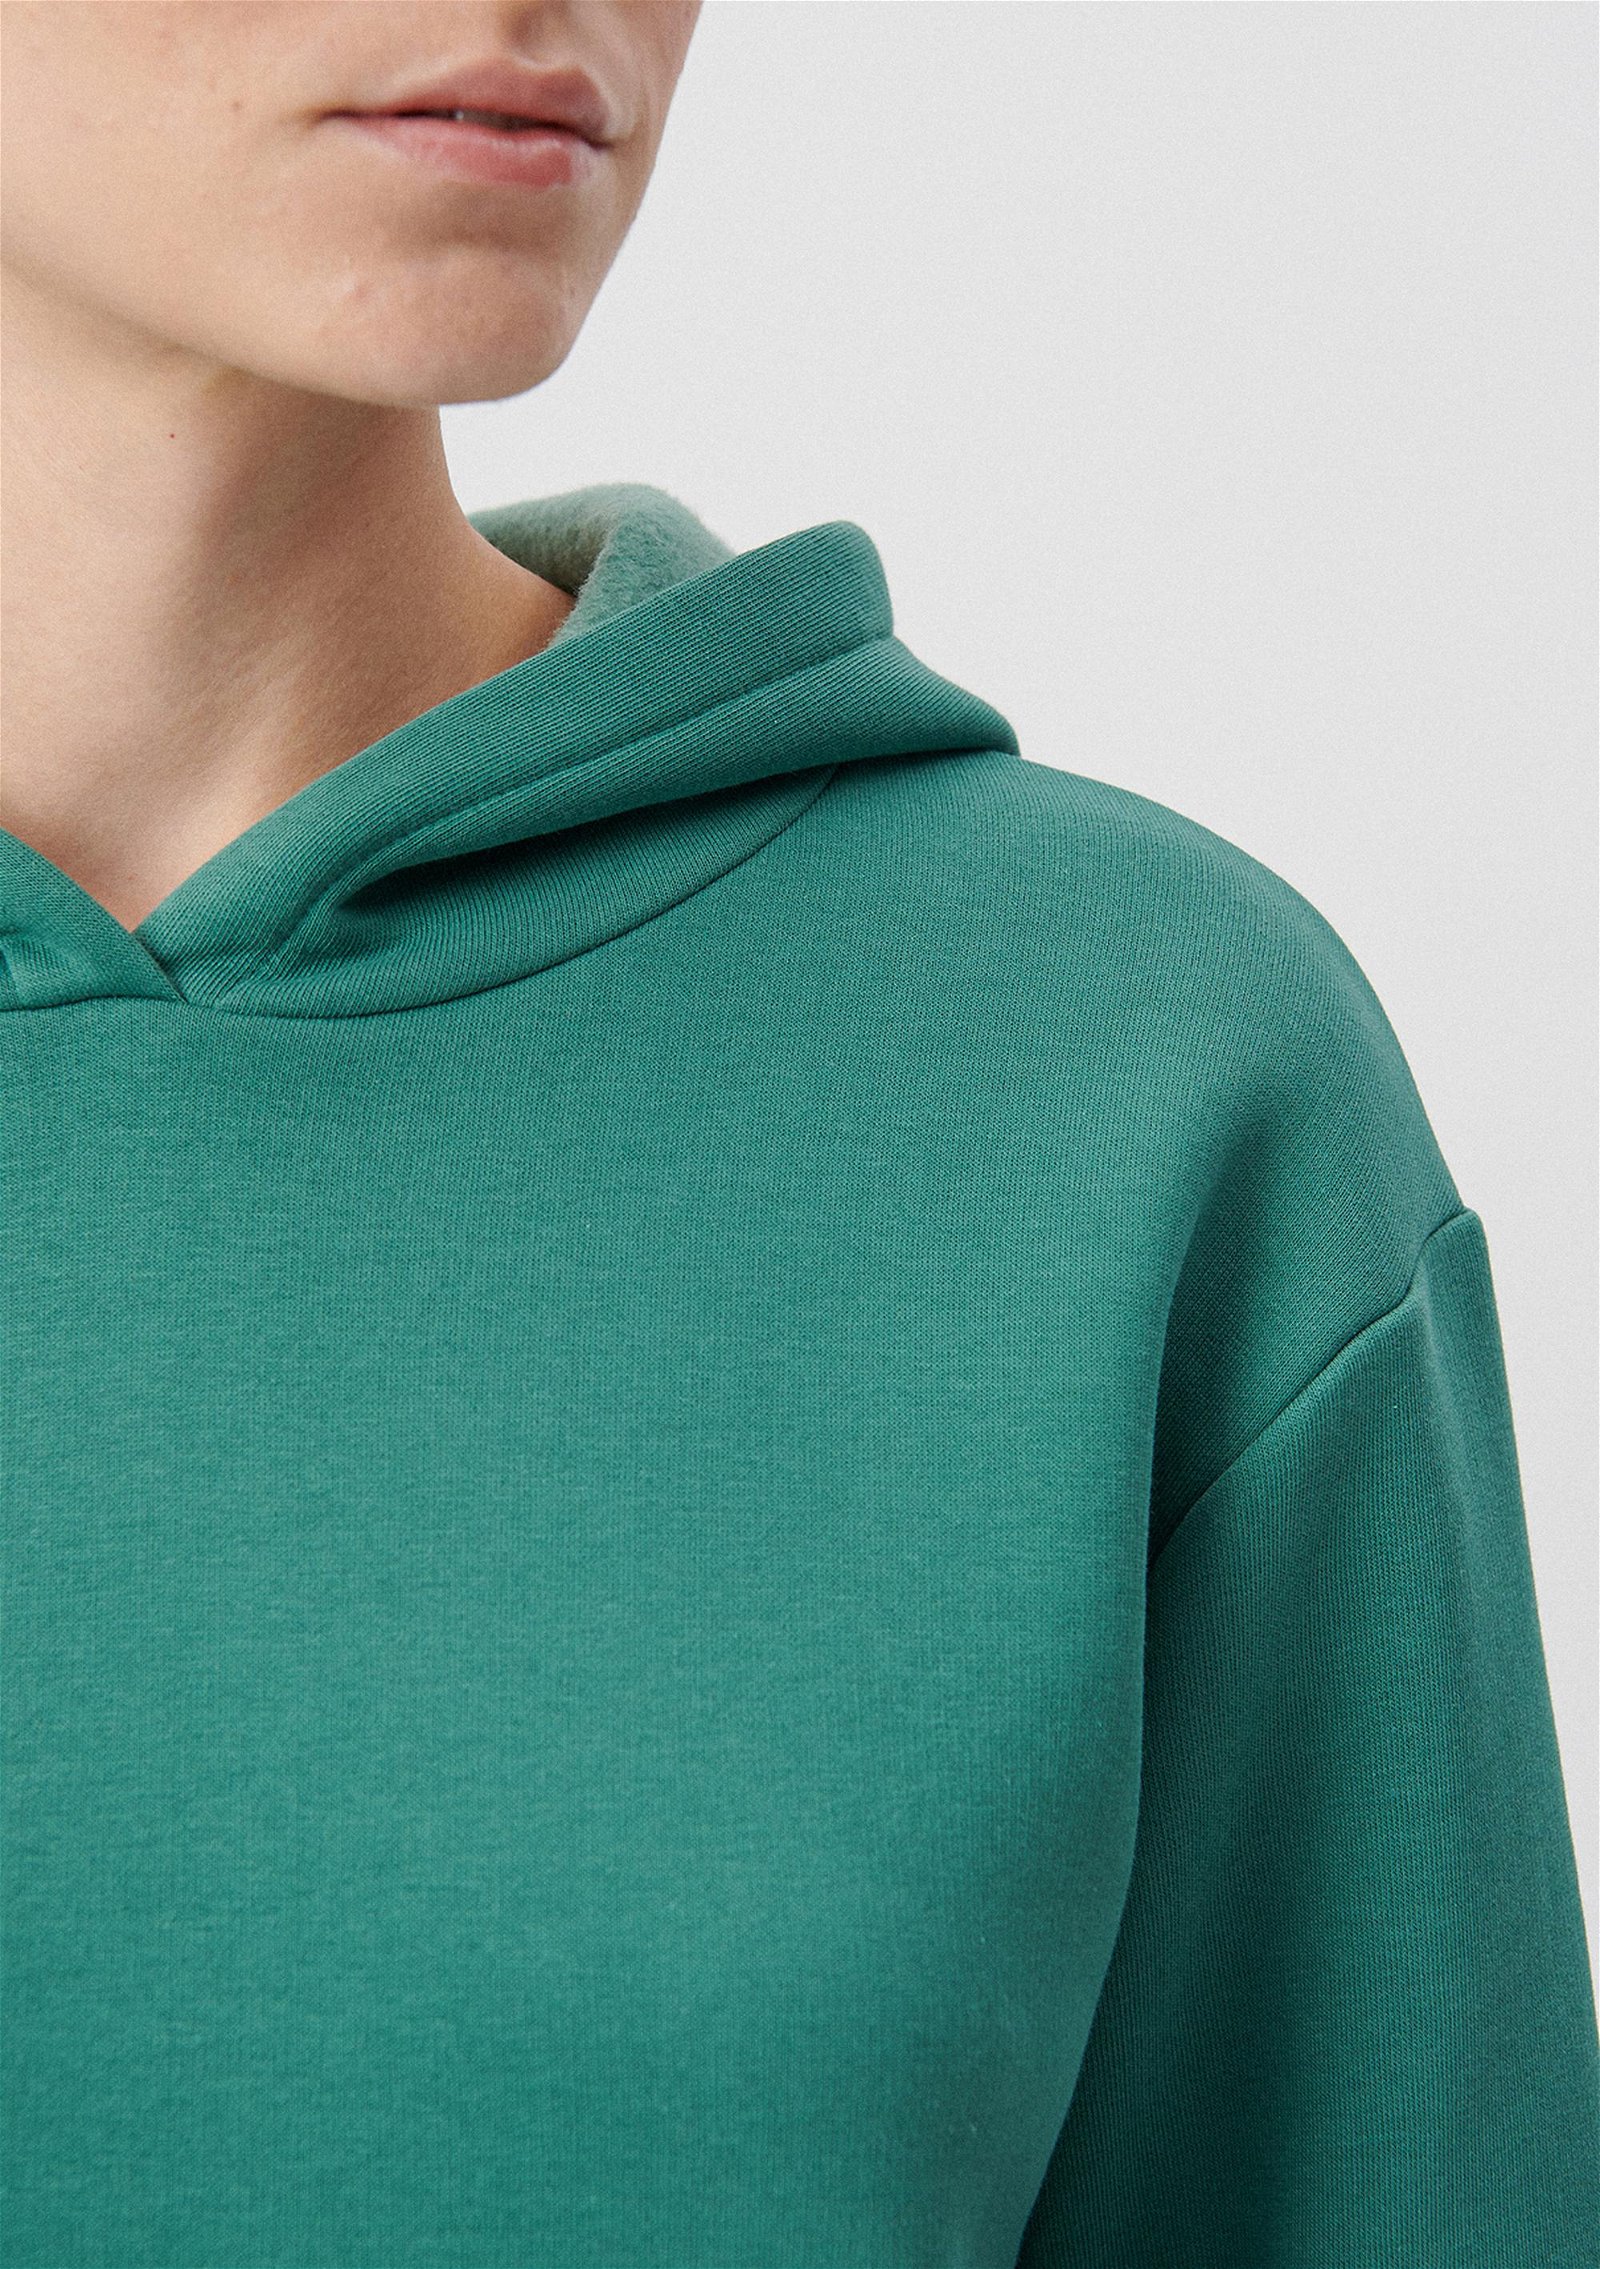 Mavi Kapüşonlu Yeşil Basic Sweatshirt 167299-71870